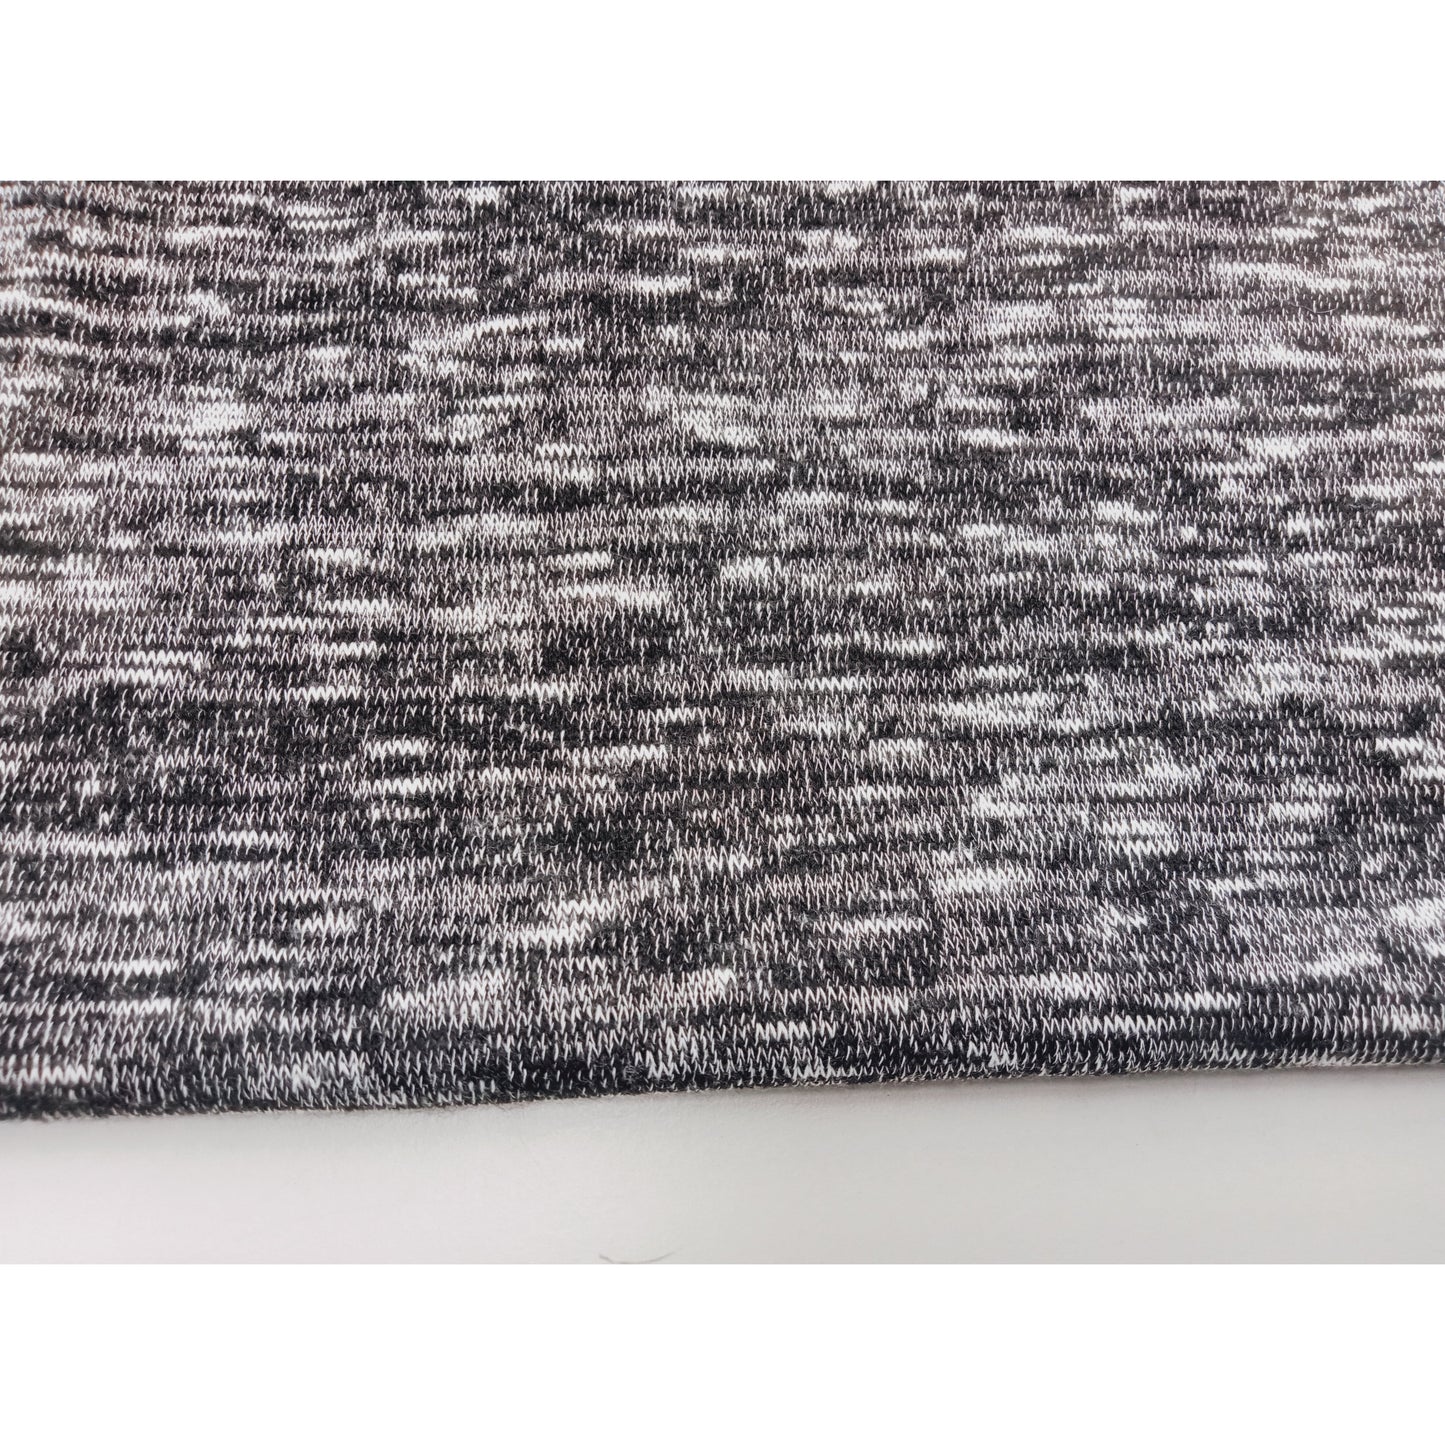 Beautiful marle knit fabric - charcoal/white